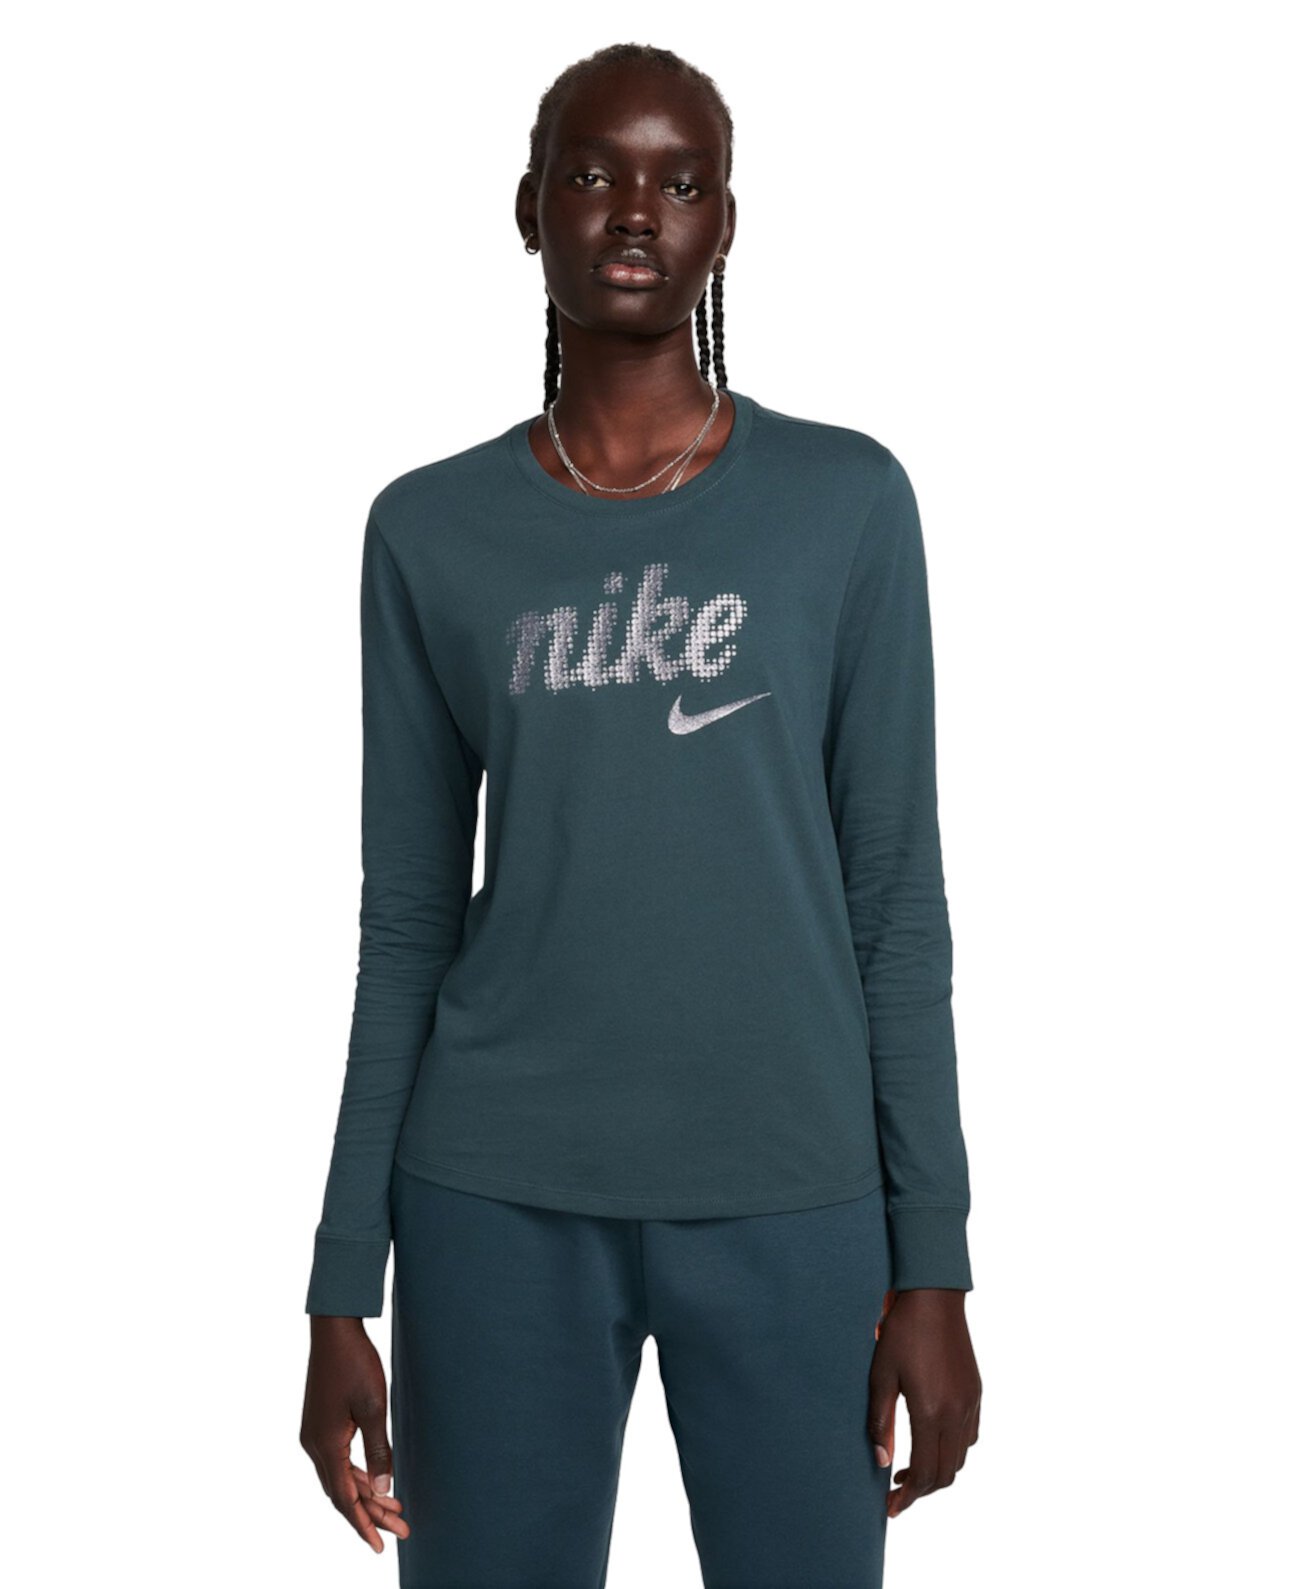 Женская спортивная одежда Essentials - топ с длинными рукавами Nike